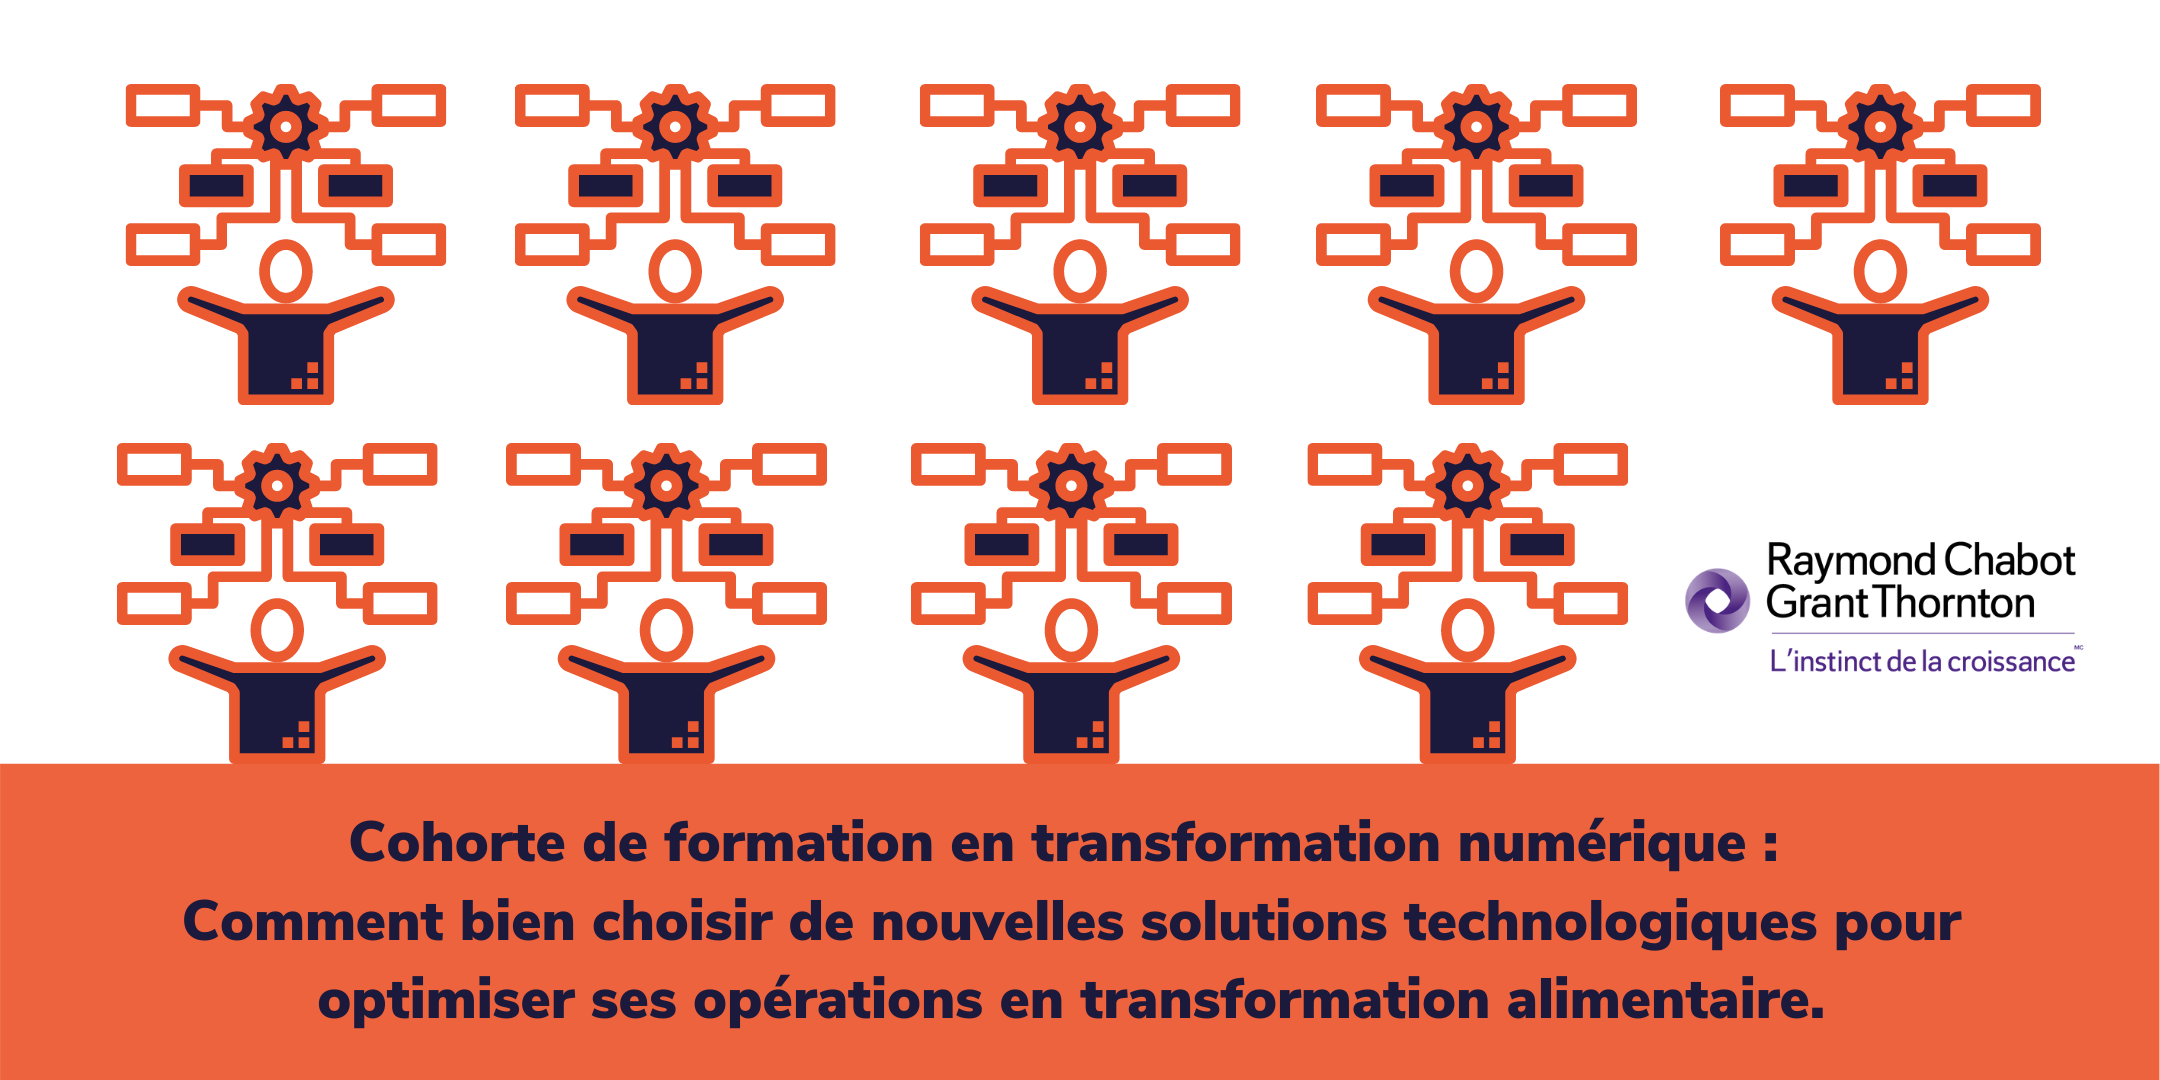 Cohorte de formation en transformation numérique : Comment bien choisir de nouvelles solutions technologiques pour optimiser ses opérations en transformation alimentaire.